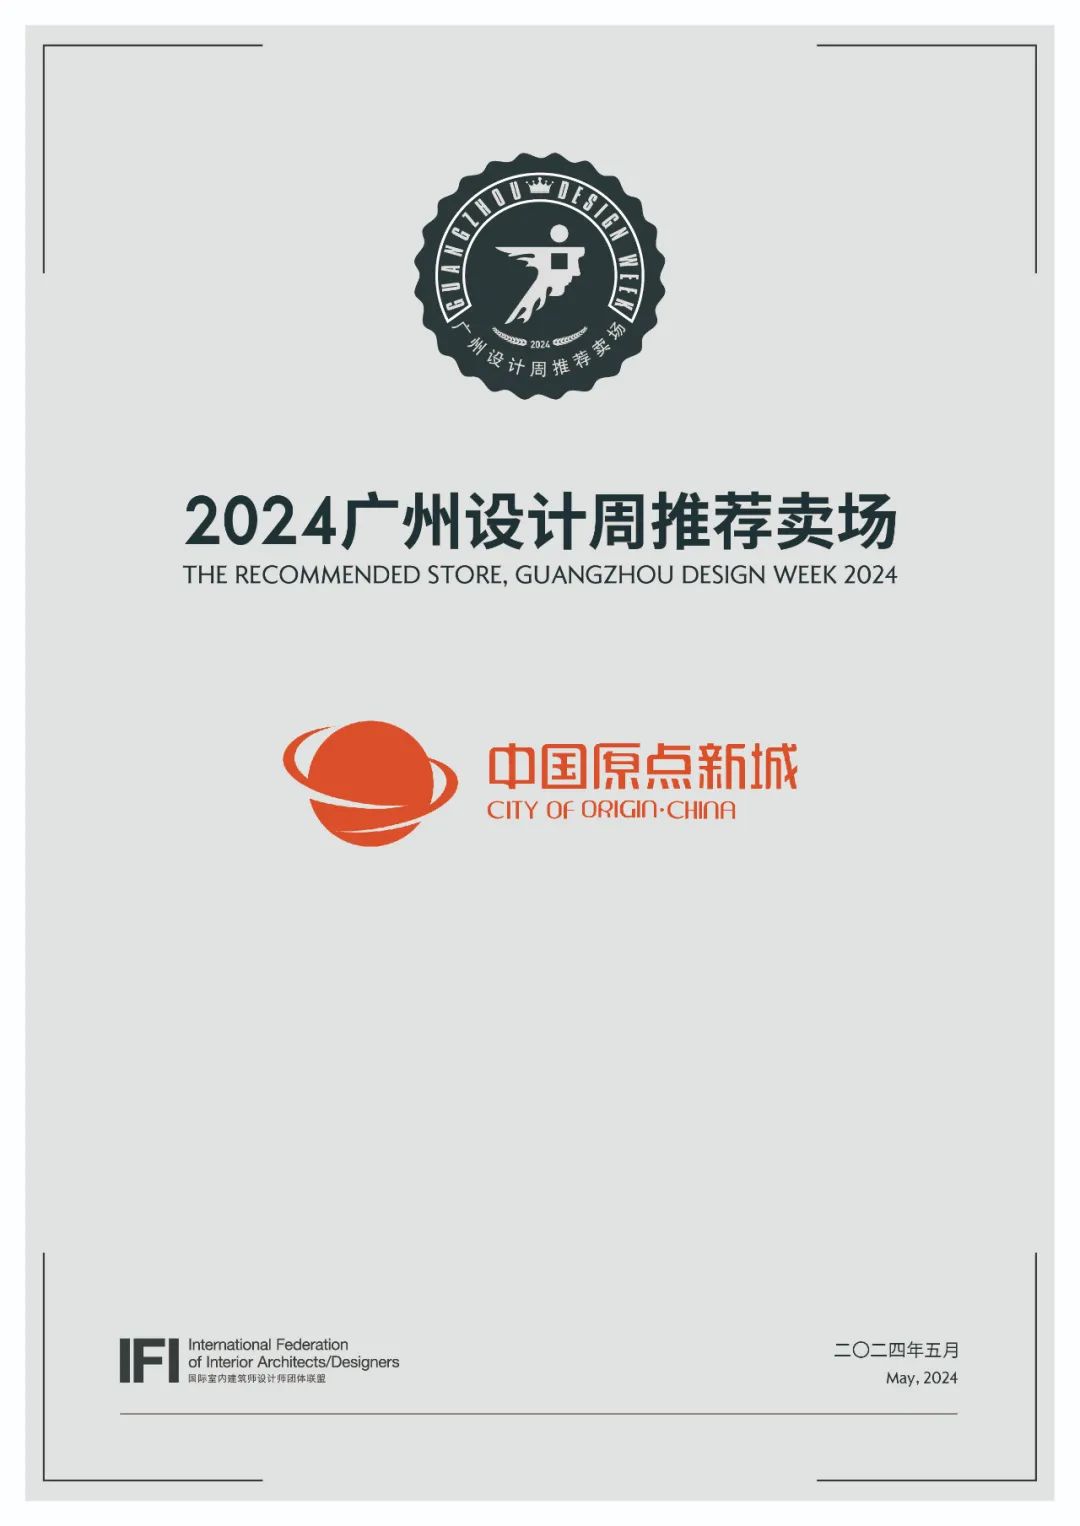 展位预订入口!2024广州设计周「广州设计周推荐卖场」原点新城